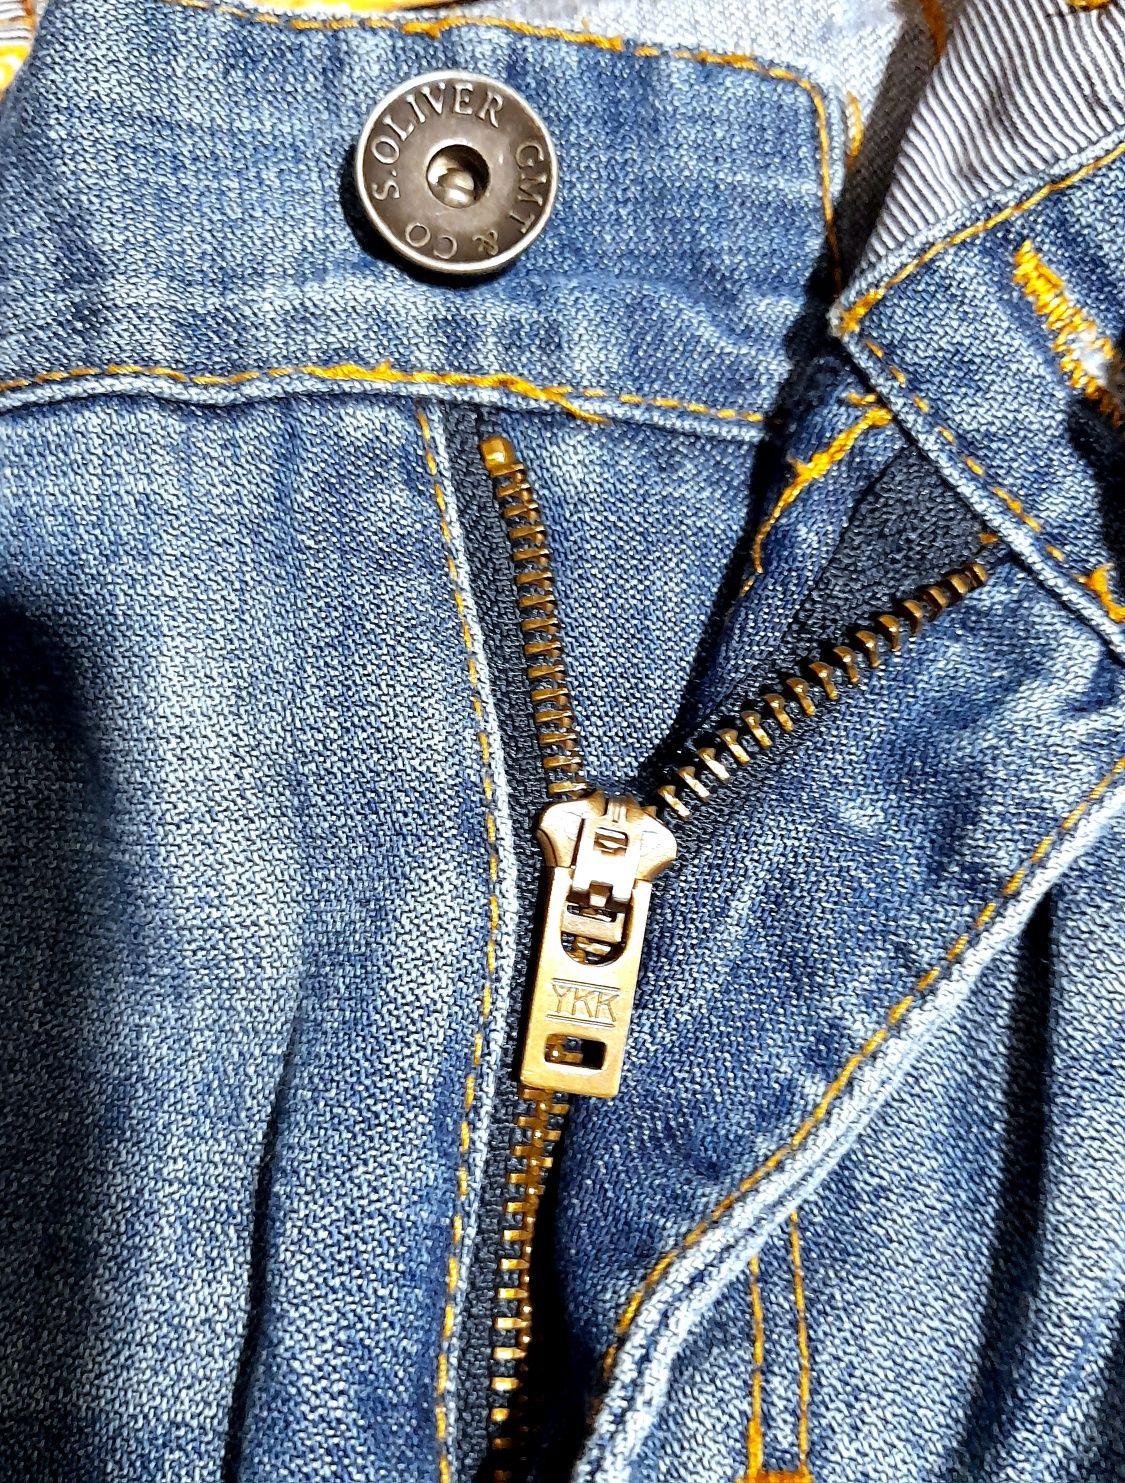 s.Oliver. мужские джинсовые бриджи, брендовые котоновые шорты